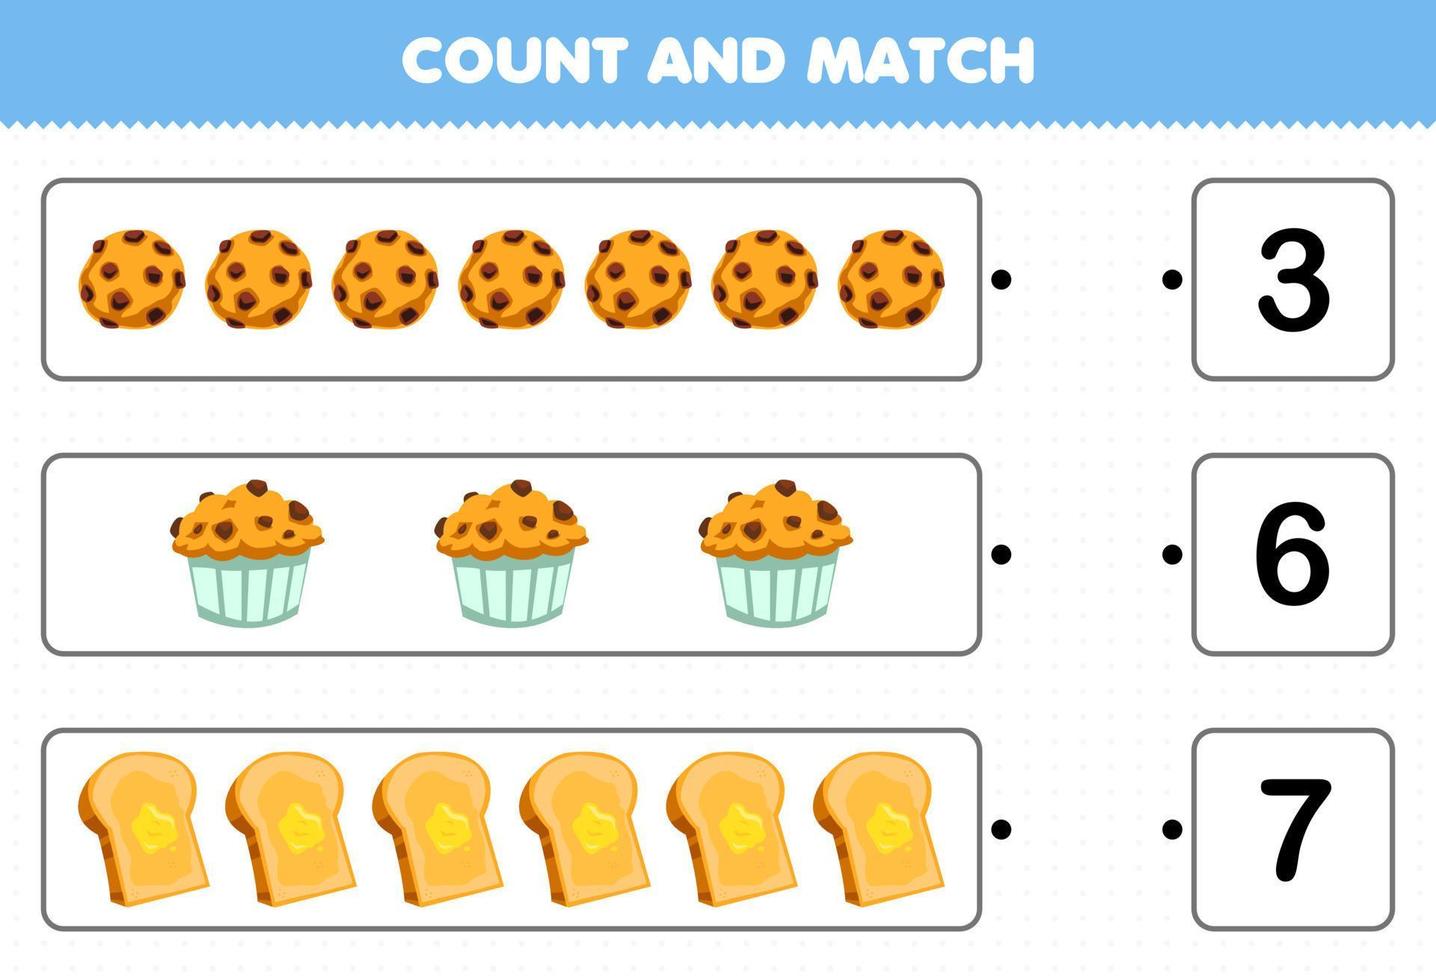 jeu éducatif pour les enfants comptez et faites correspondre comptez le nombre de toasts de muffins aux biscuits de dessin animé et faites correspondre avec les bons numéros feuille de calcul imprimable vecteur